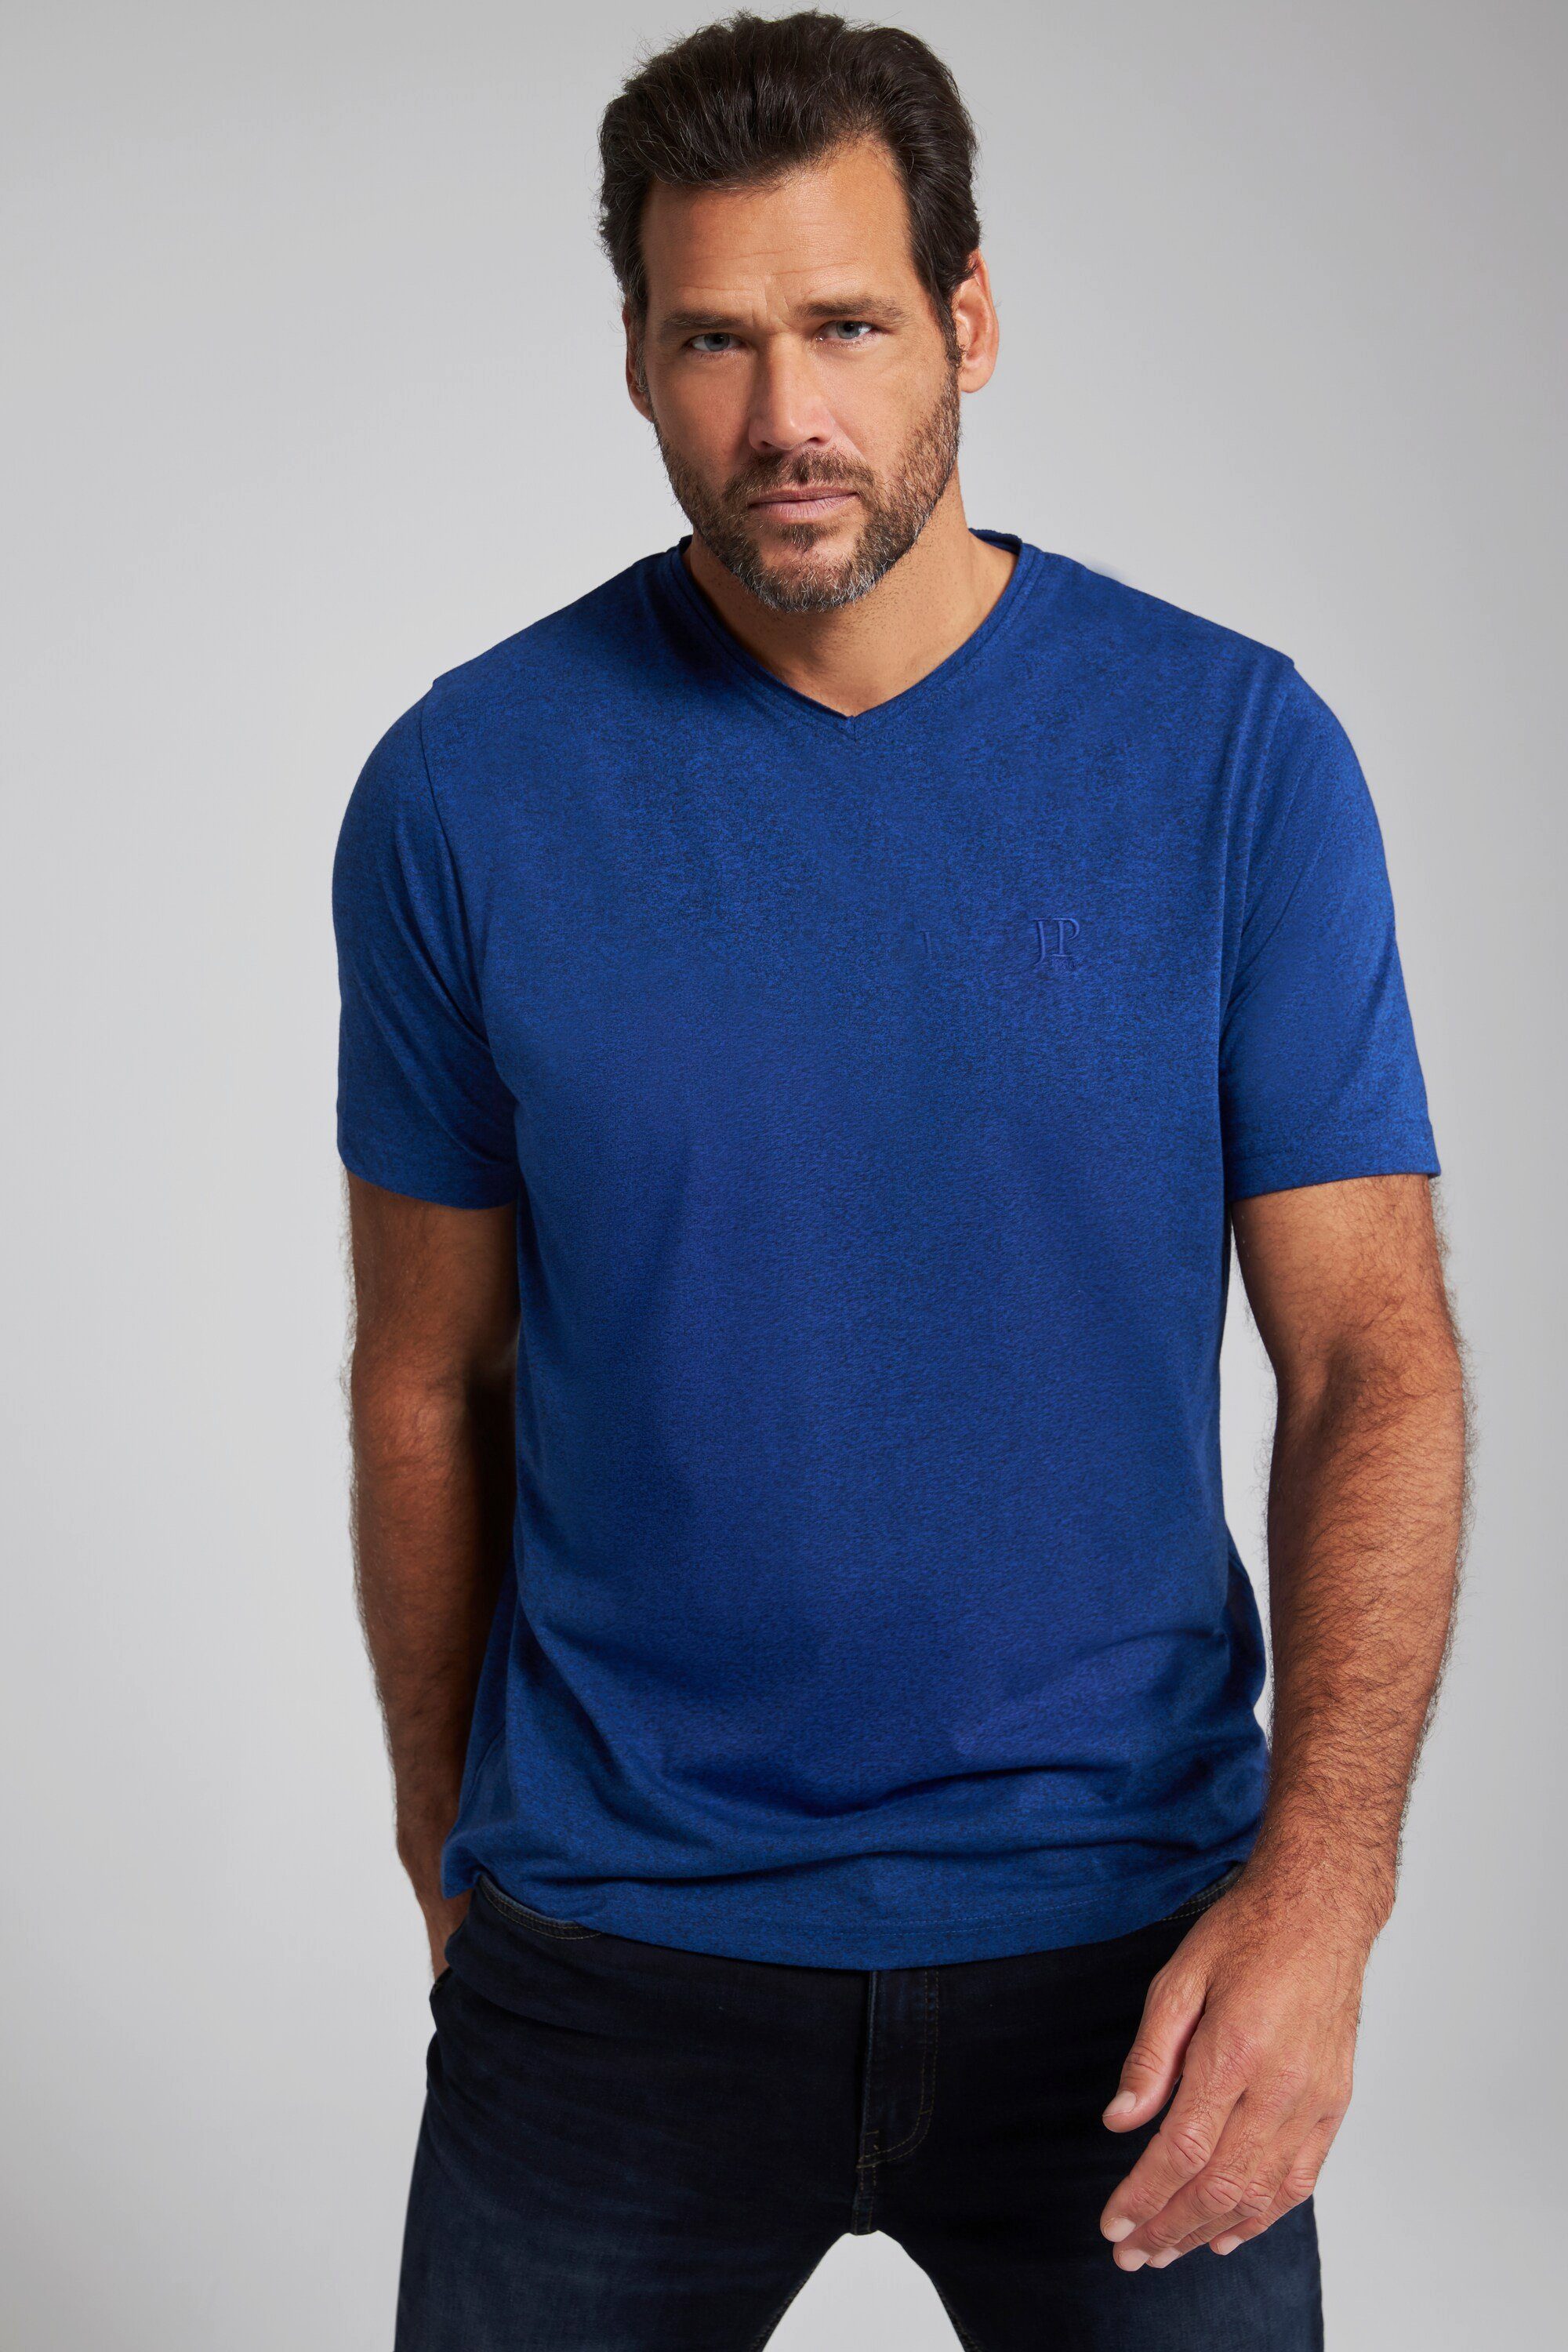 T-Shirt T-Shirt Halbarm V-Ausschnitt clematisblau JP1880